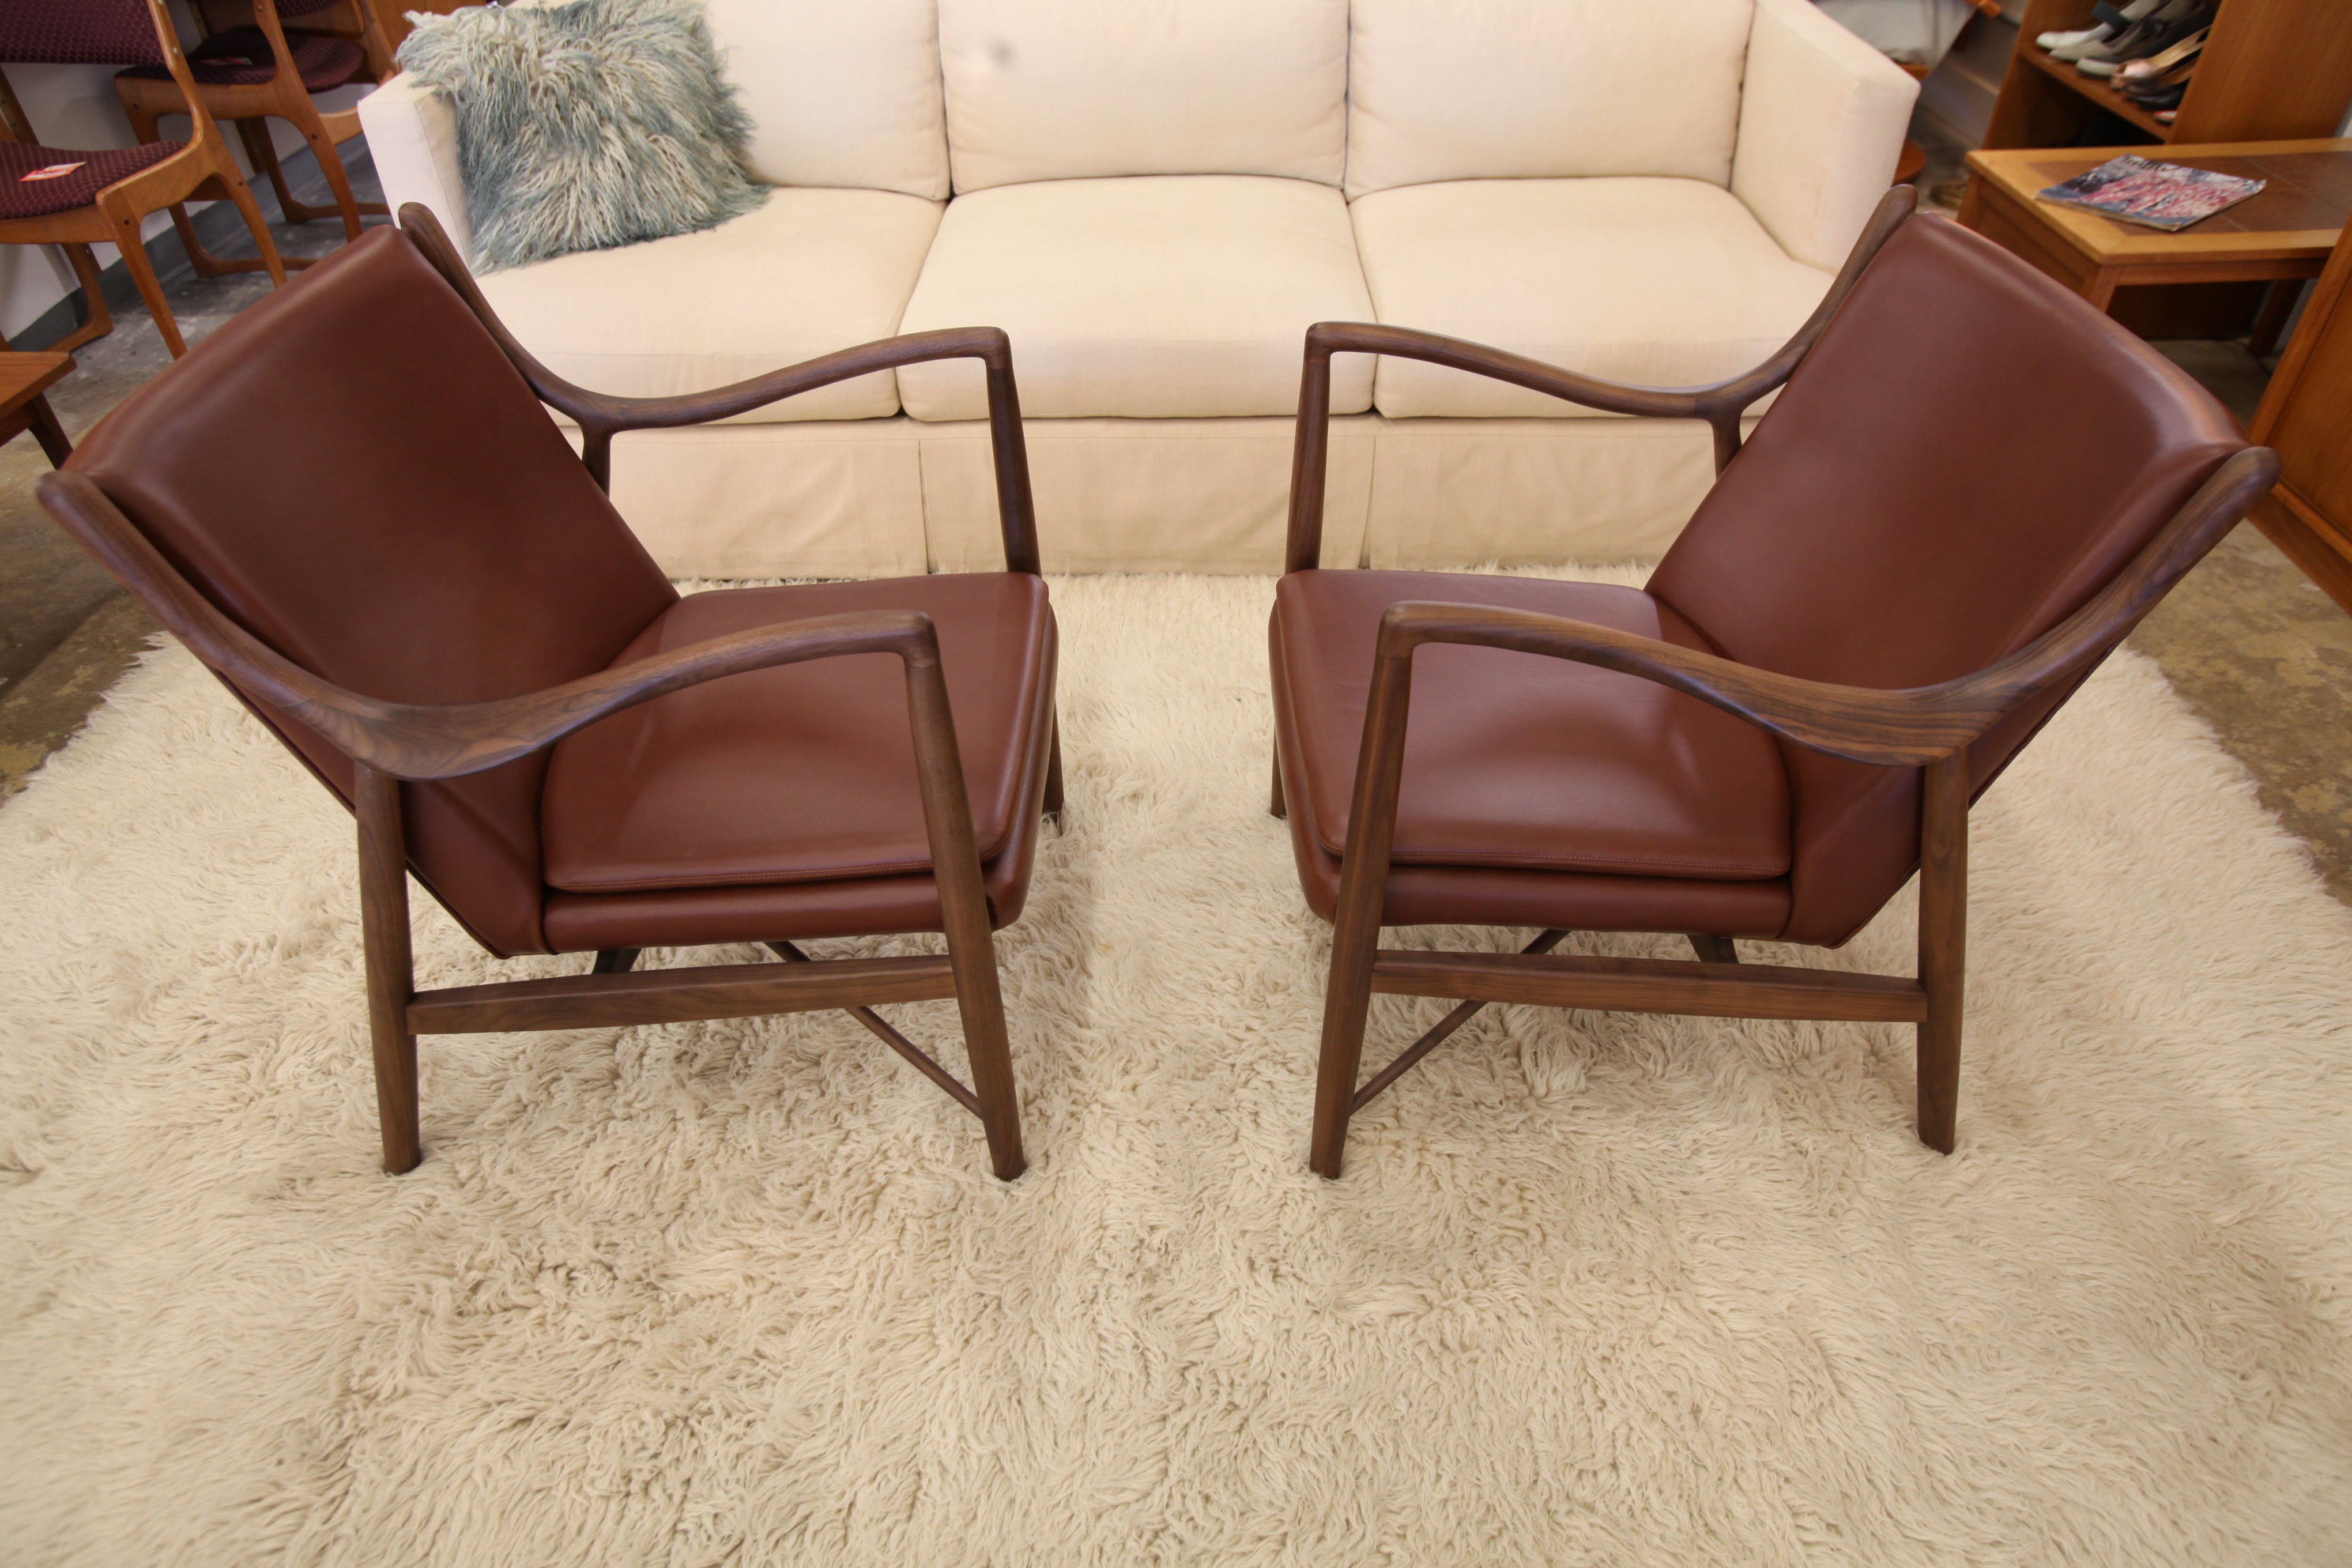 Fabulous Walnut / Leather Finn Juhl Replica NV45 Chair (27.75"W x 31"H x 30"D)